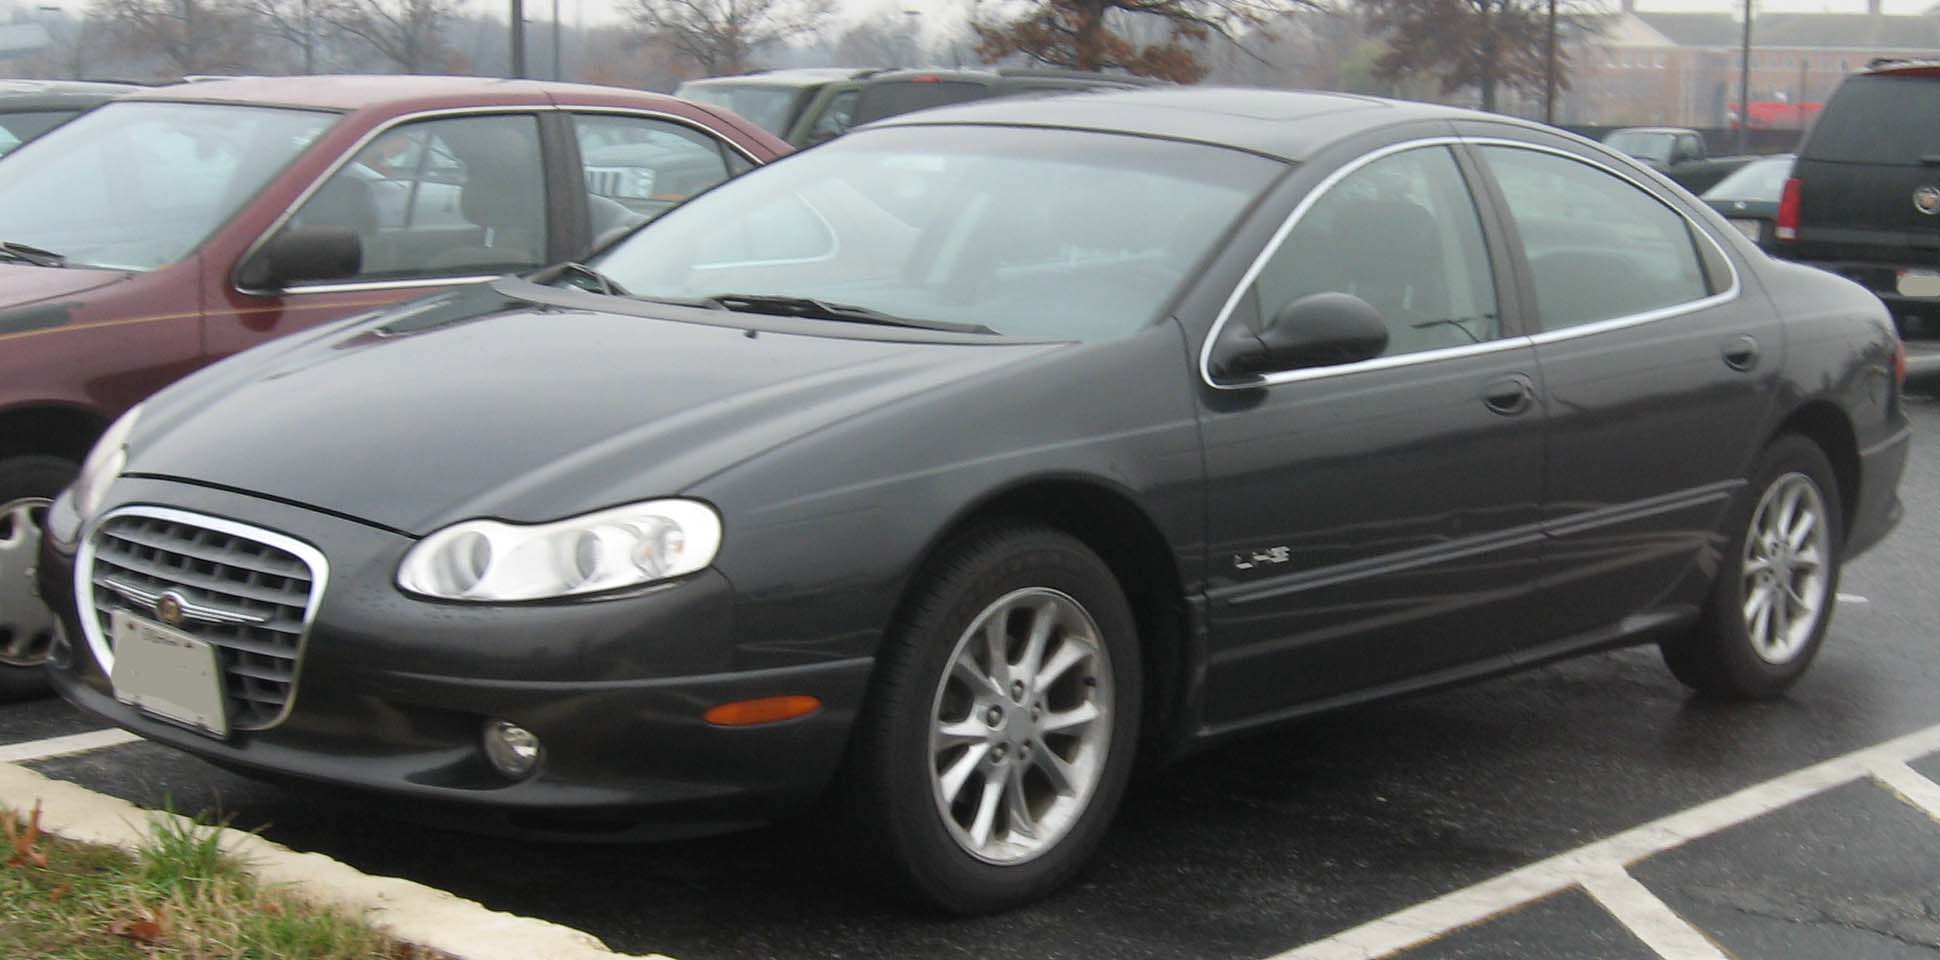 Chrysler LHS - Wikipedia